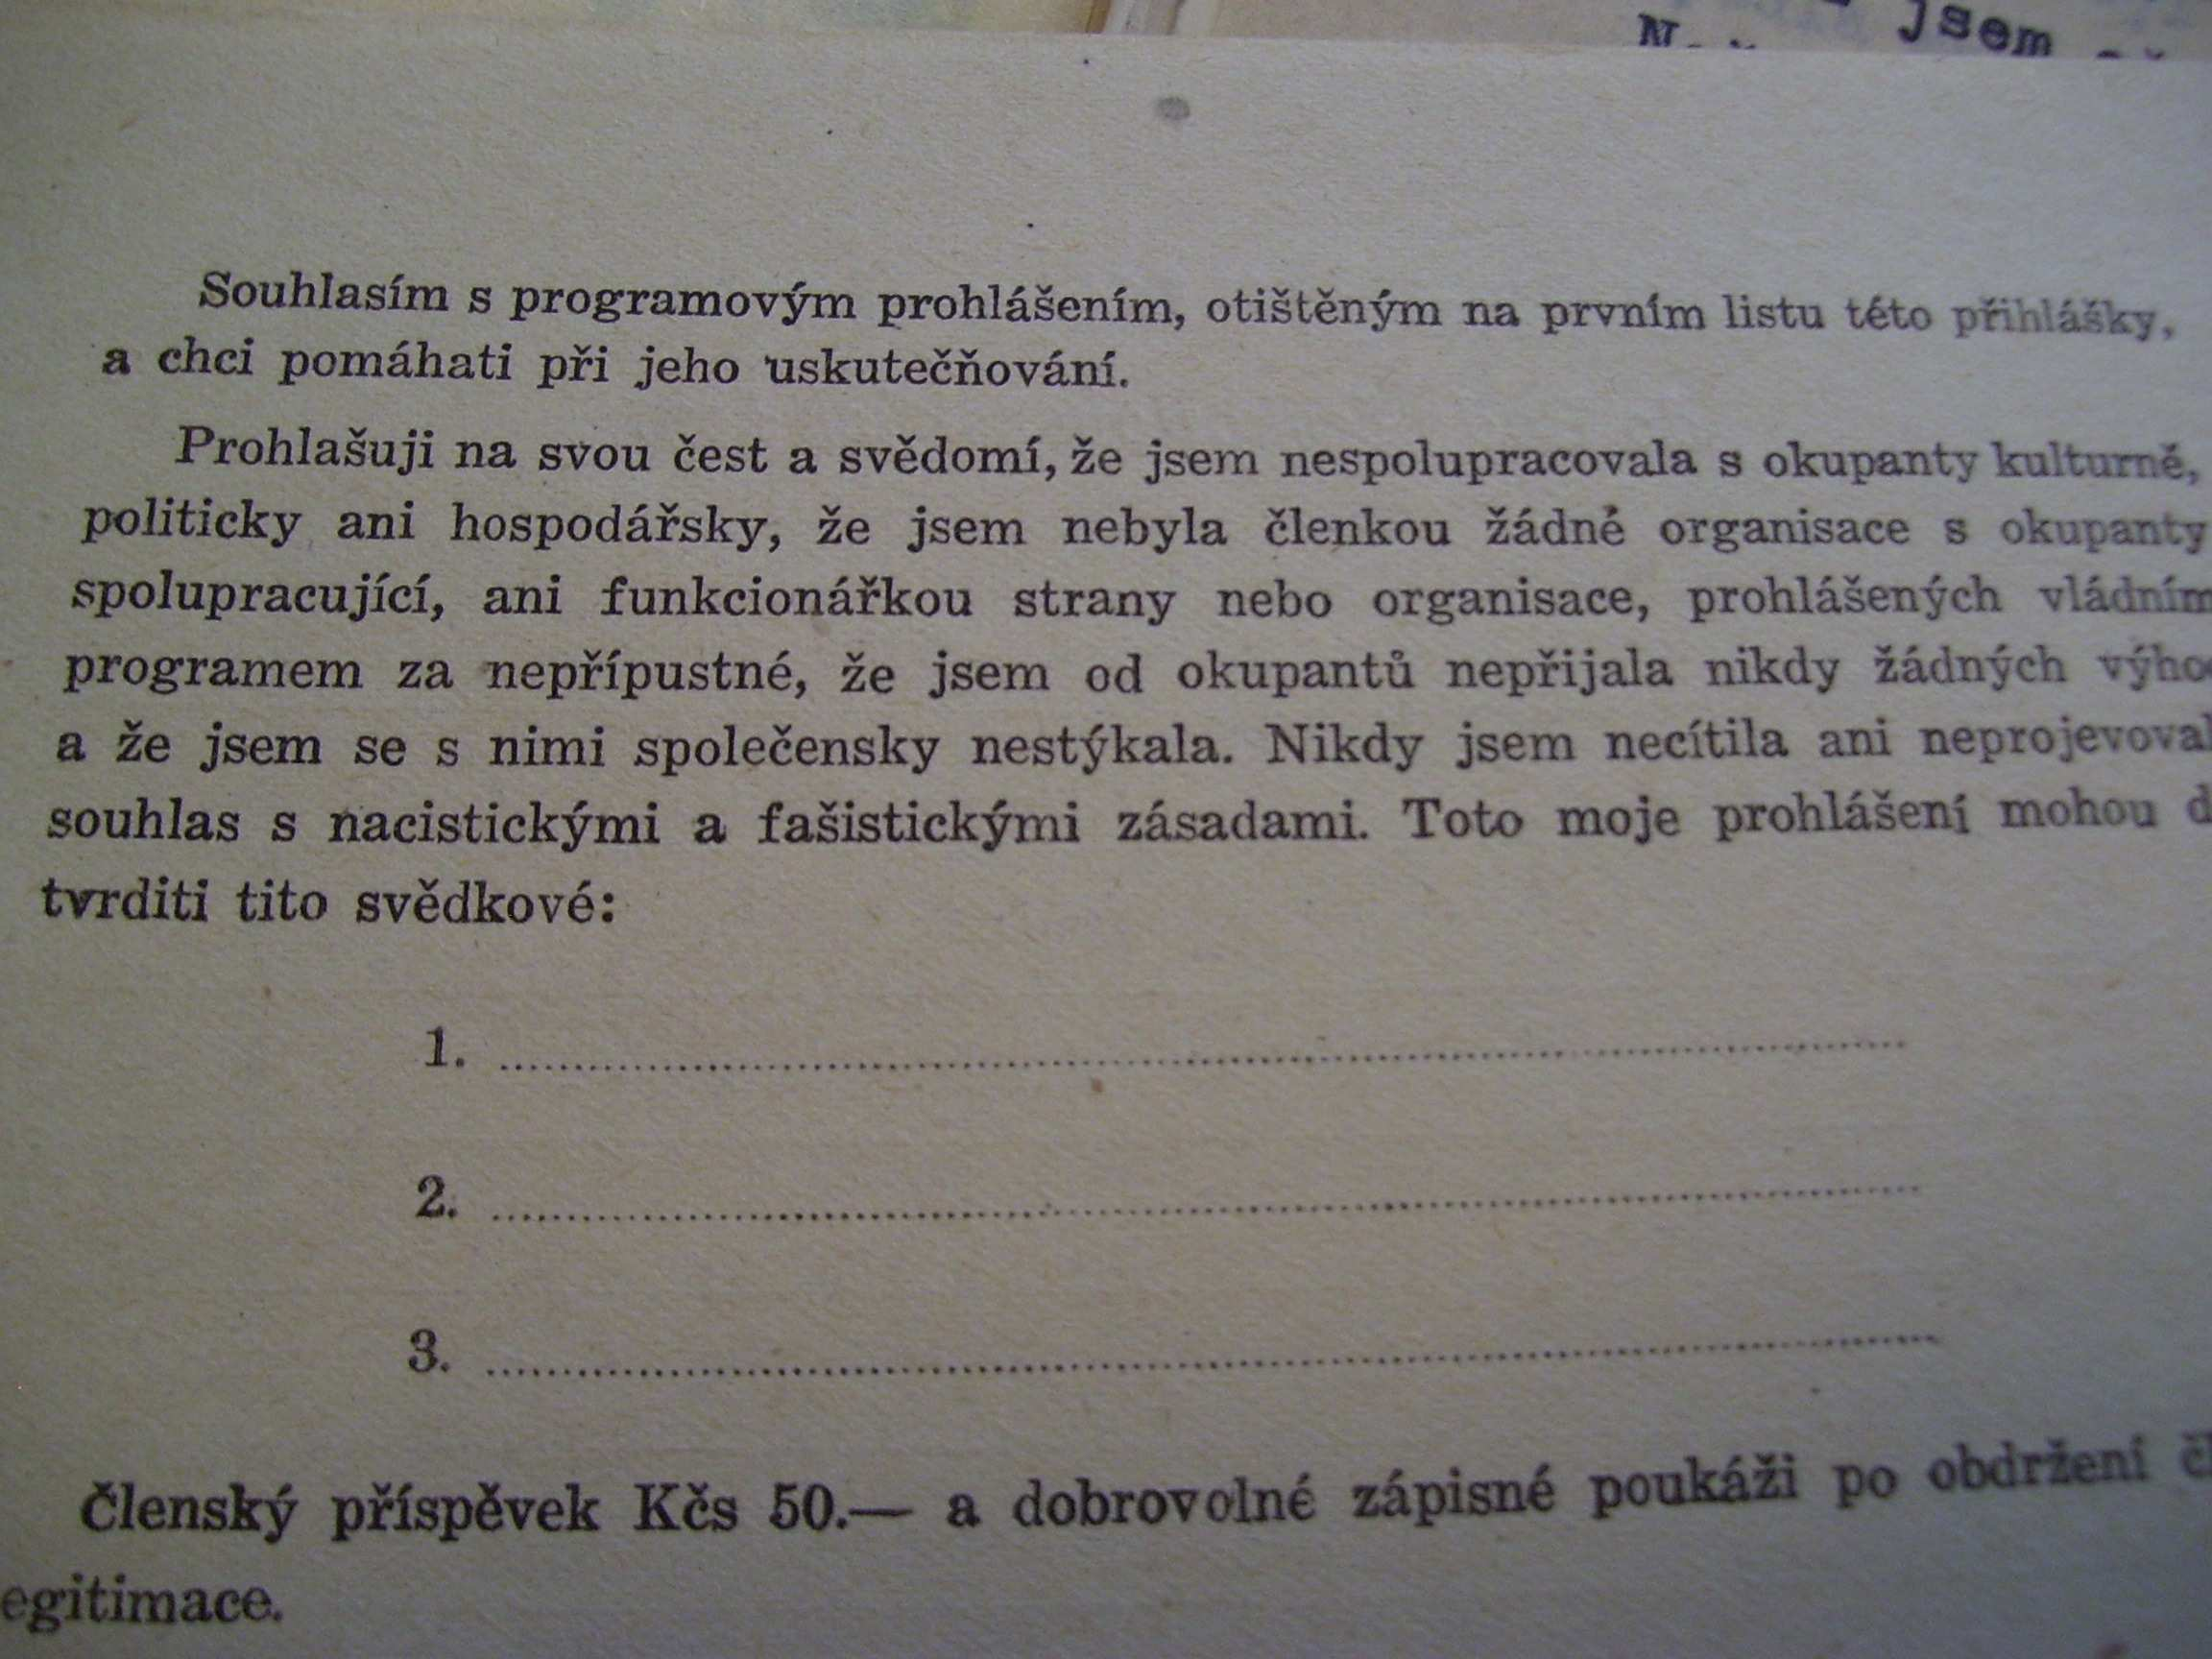 57 Příloha č. 2 Osobní přihláška členky do spolku Rady československých žen (2. část).